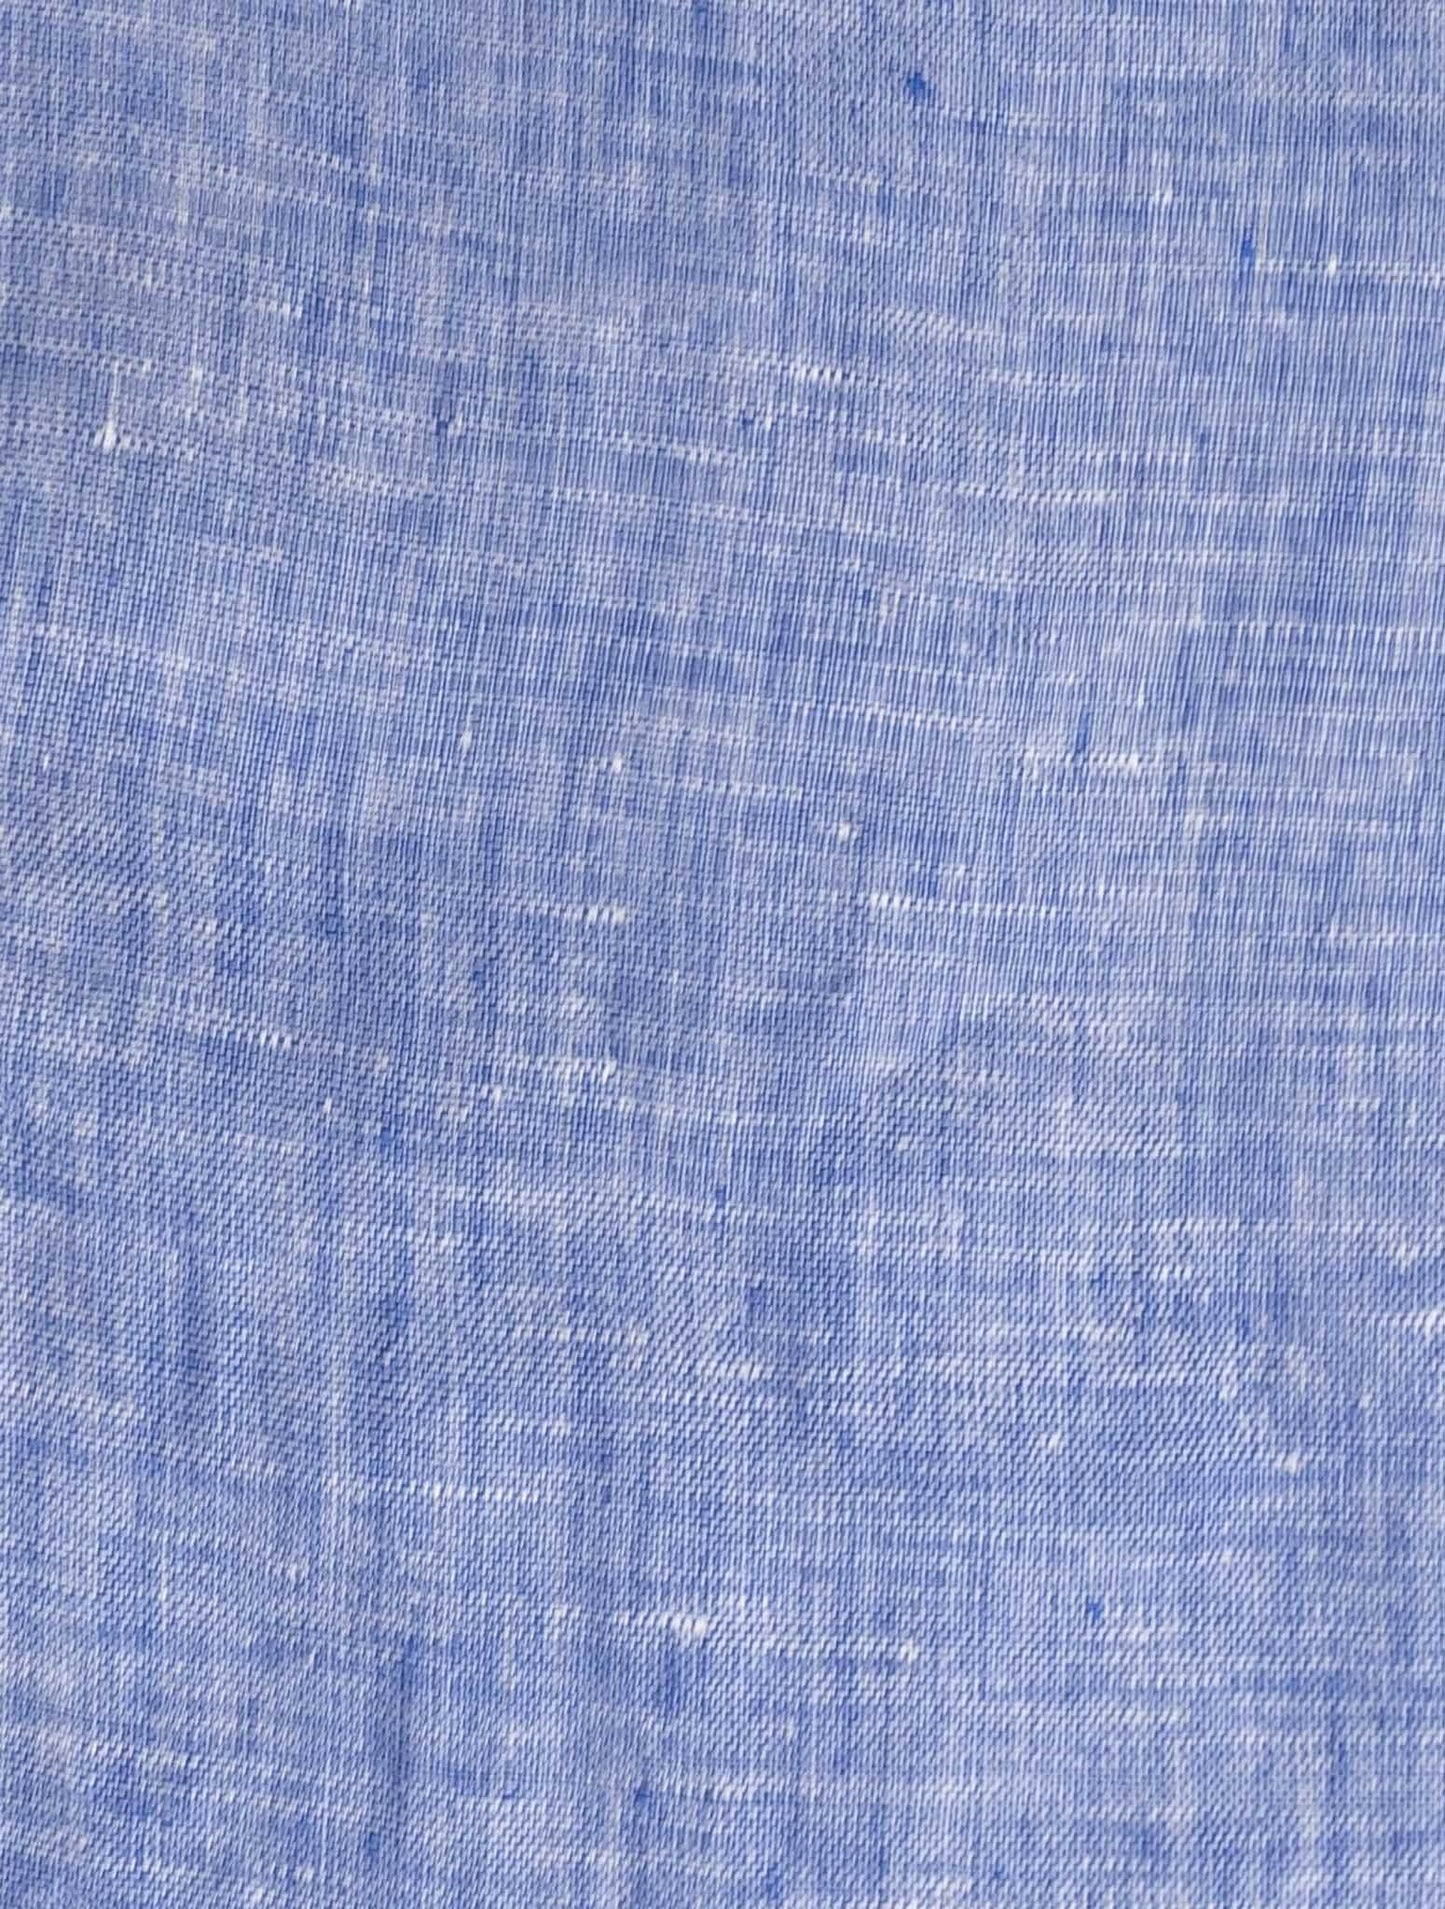 Luigiho borrelliho světle modrá lenová košile